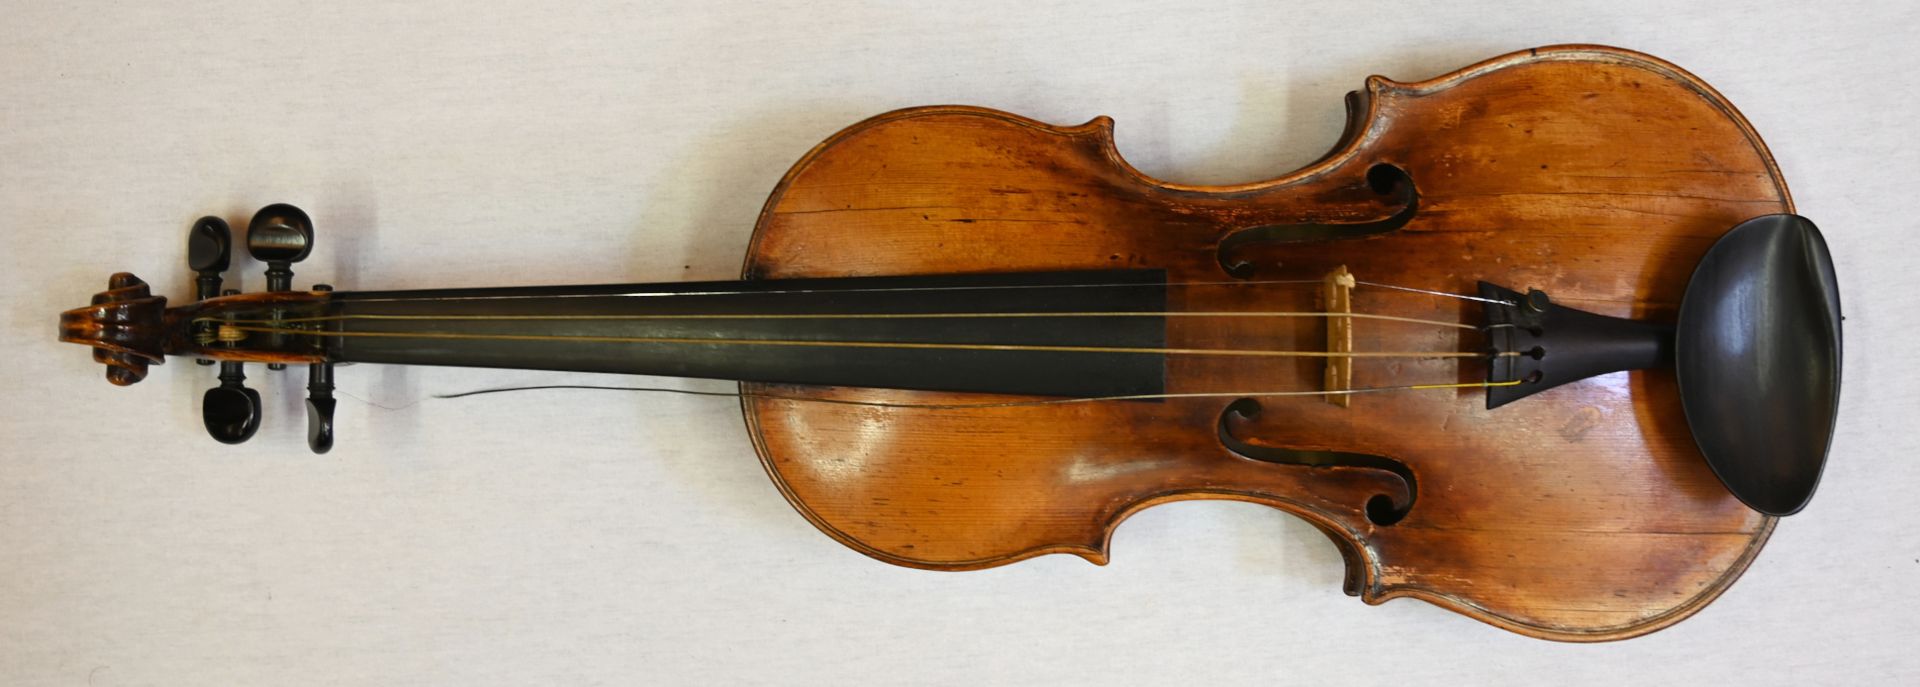 1 Geige rücks. bez. mit Brennstempel "WAGNER" wohl Allongé-Modell, Schnecke/Wirbelkasten aus Birnbau